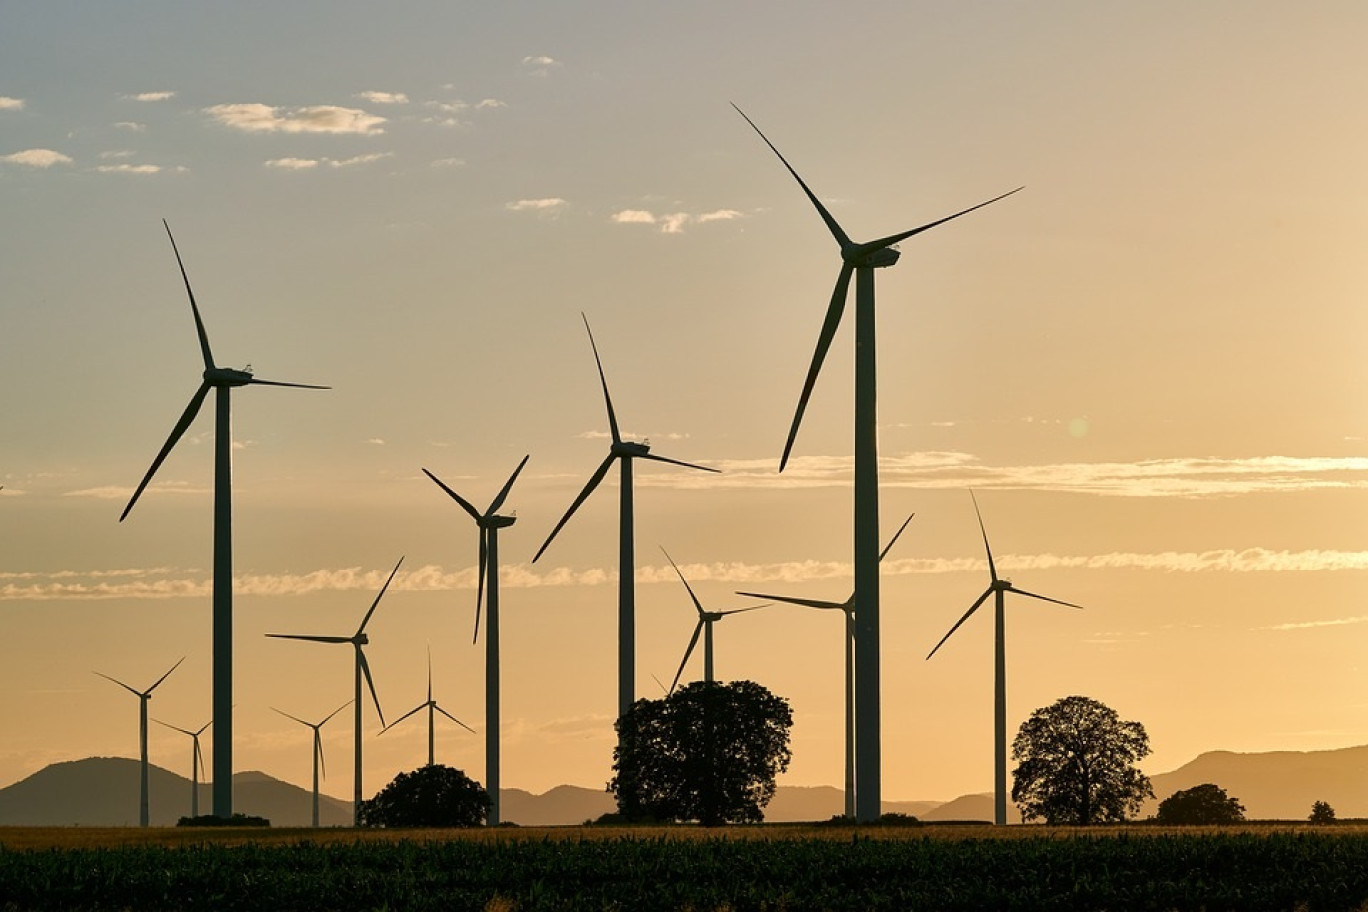 6 500 éoliennes supplémentaires devraient être implantées d’ici à 2030 selon la Programmation pluriannuelle de l’énergie.